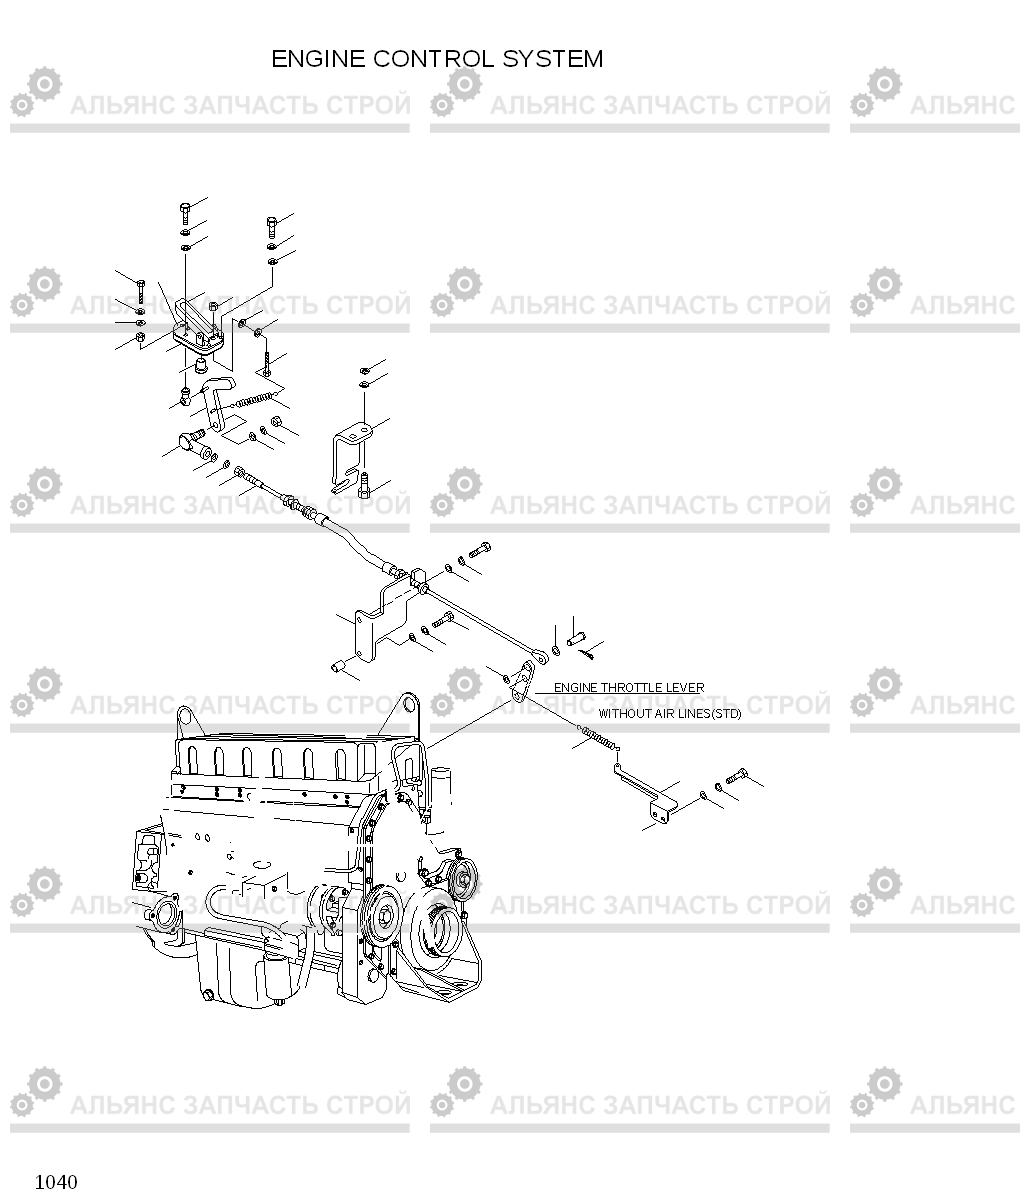 1040 ENGINE CONTROL SYSTEM HL770(#1001-#1170), Hyundai